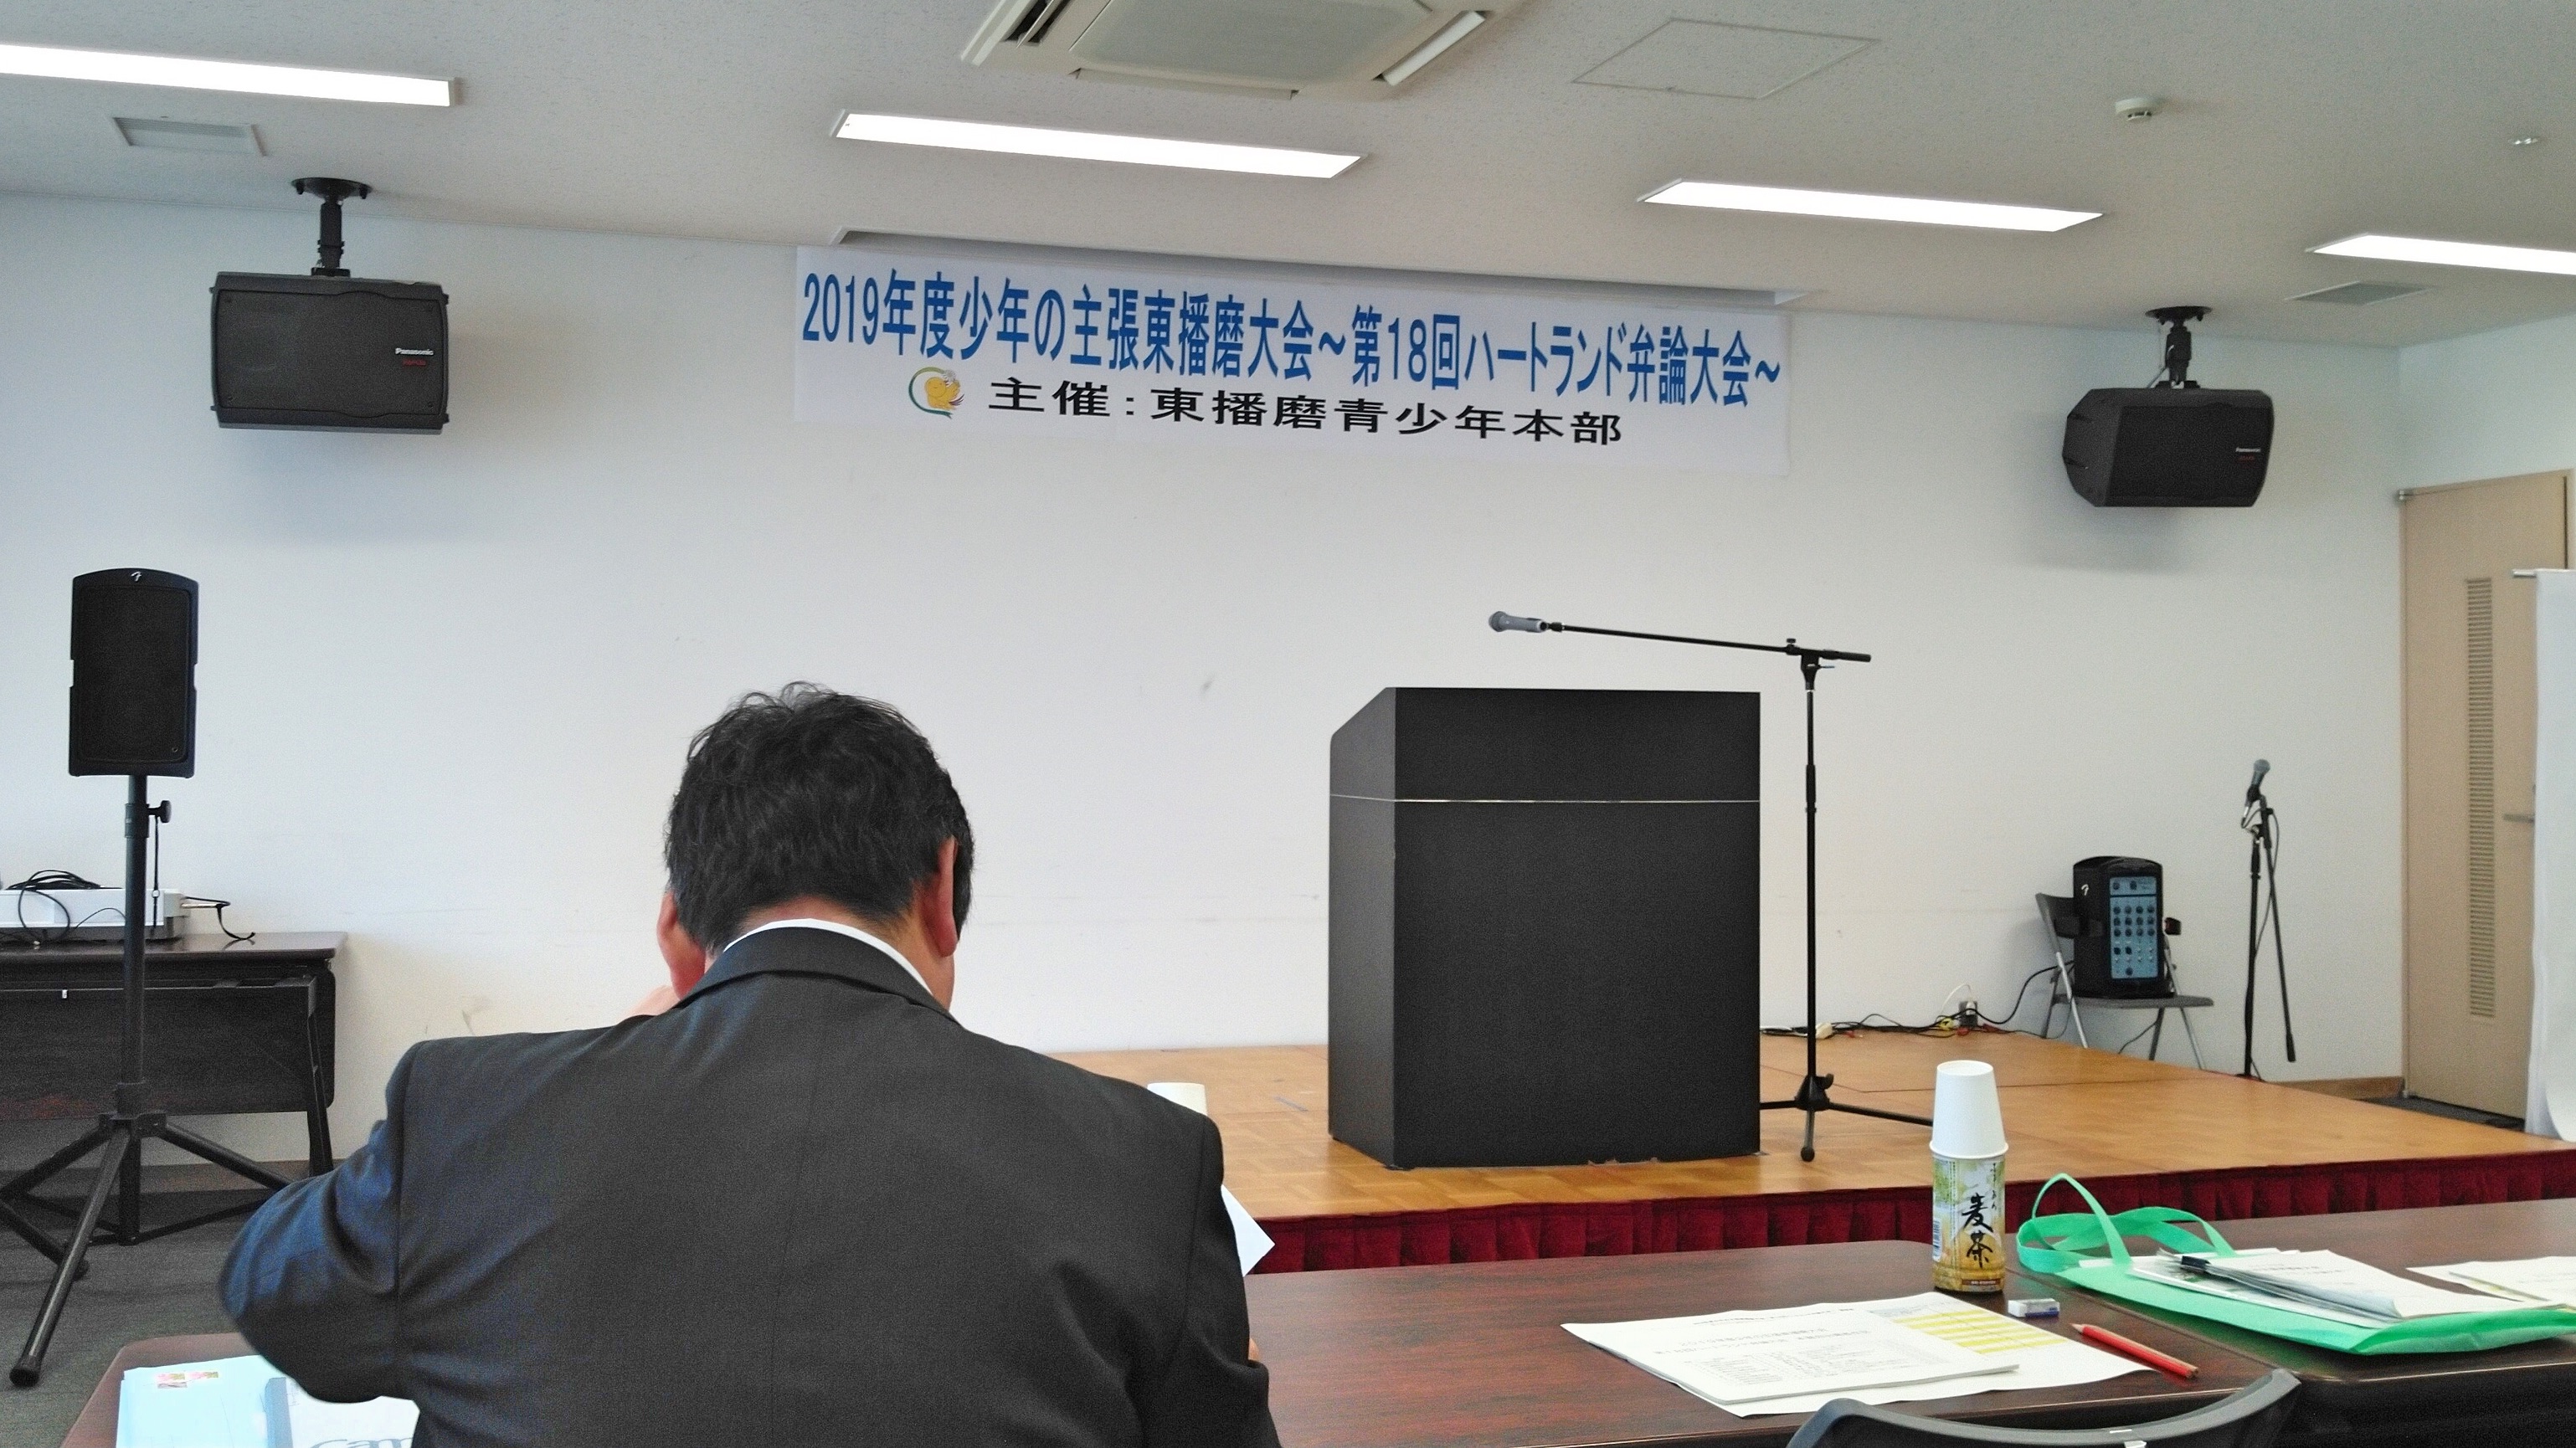 2019年8月10日(土) 少年の主張東播磨大会に出席